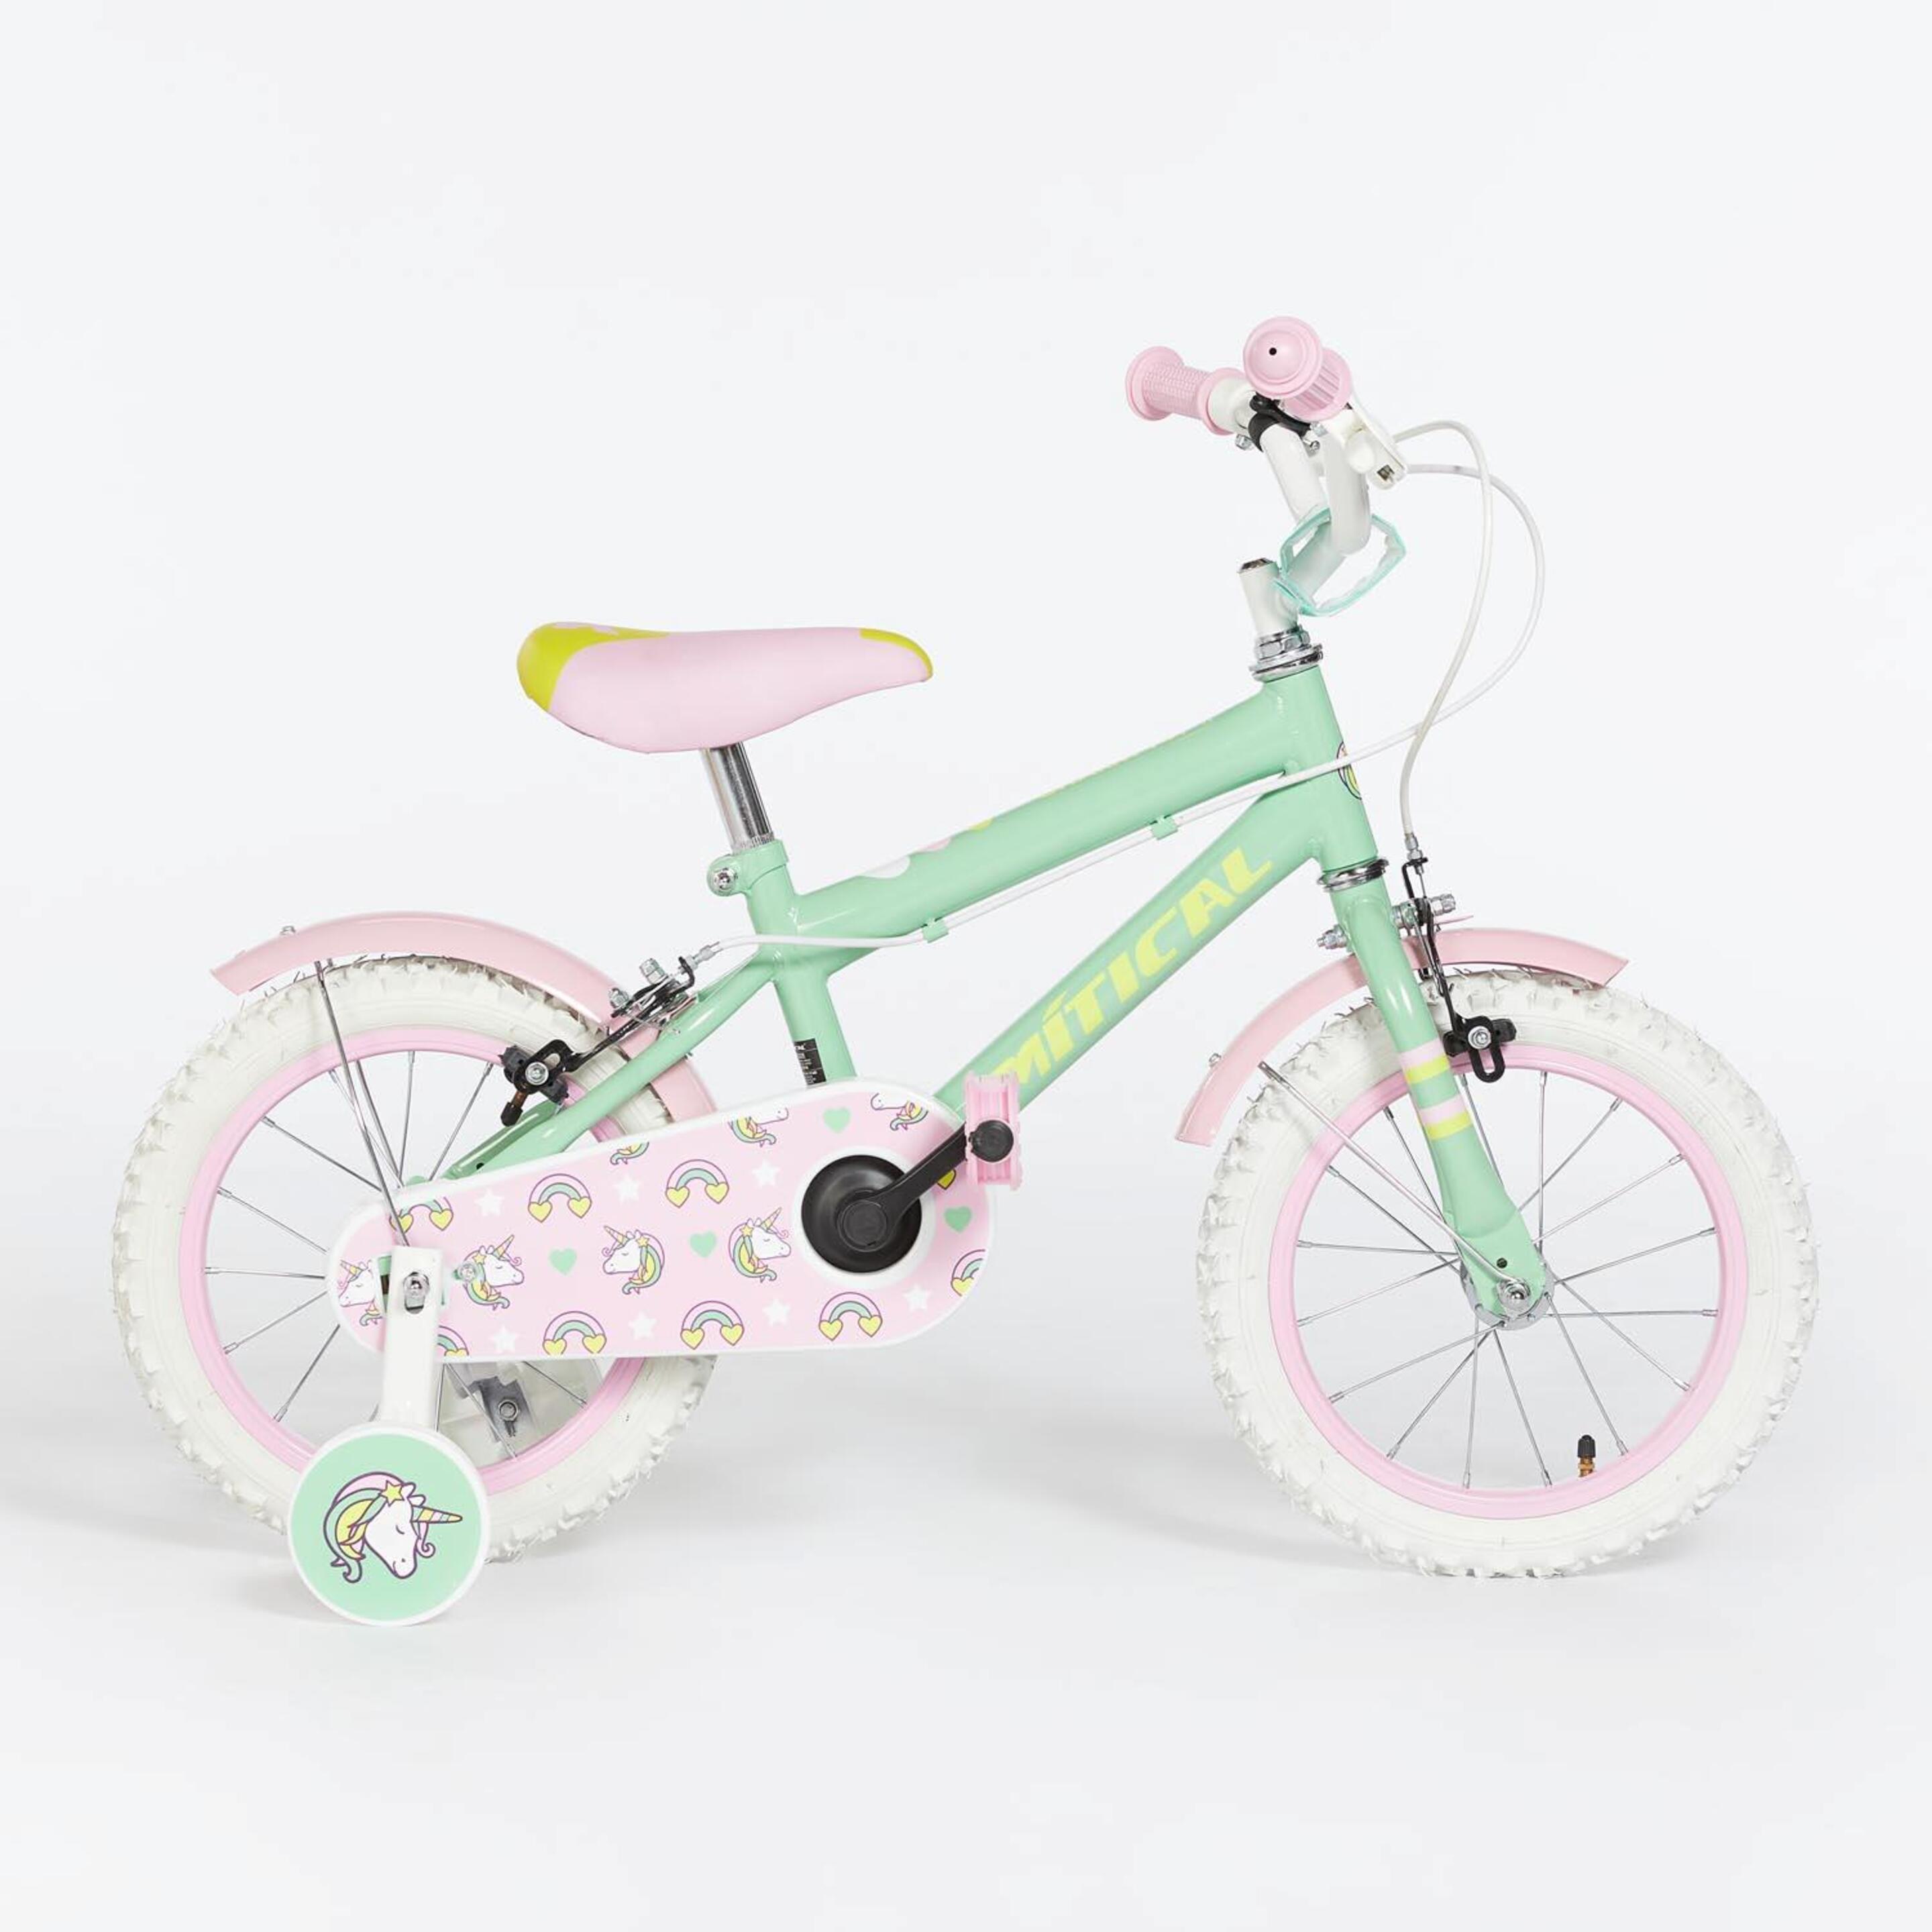 Mítical Charm 141 14" - verde - Bicicleta Criança